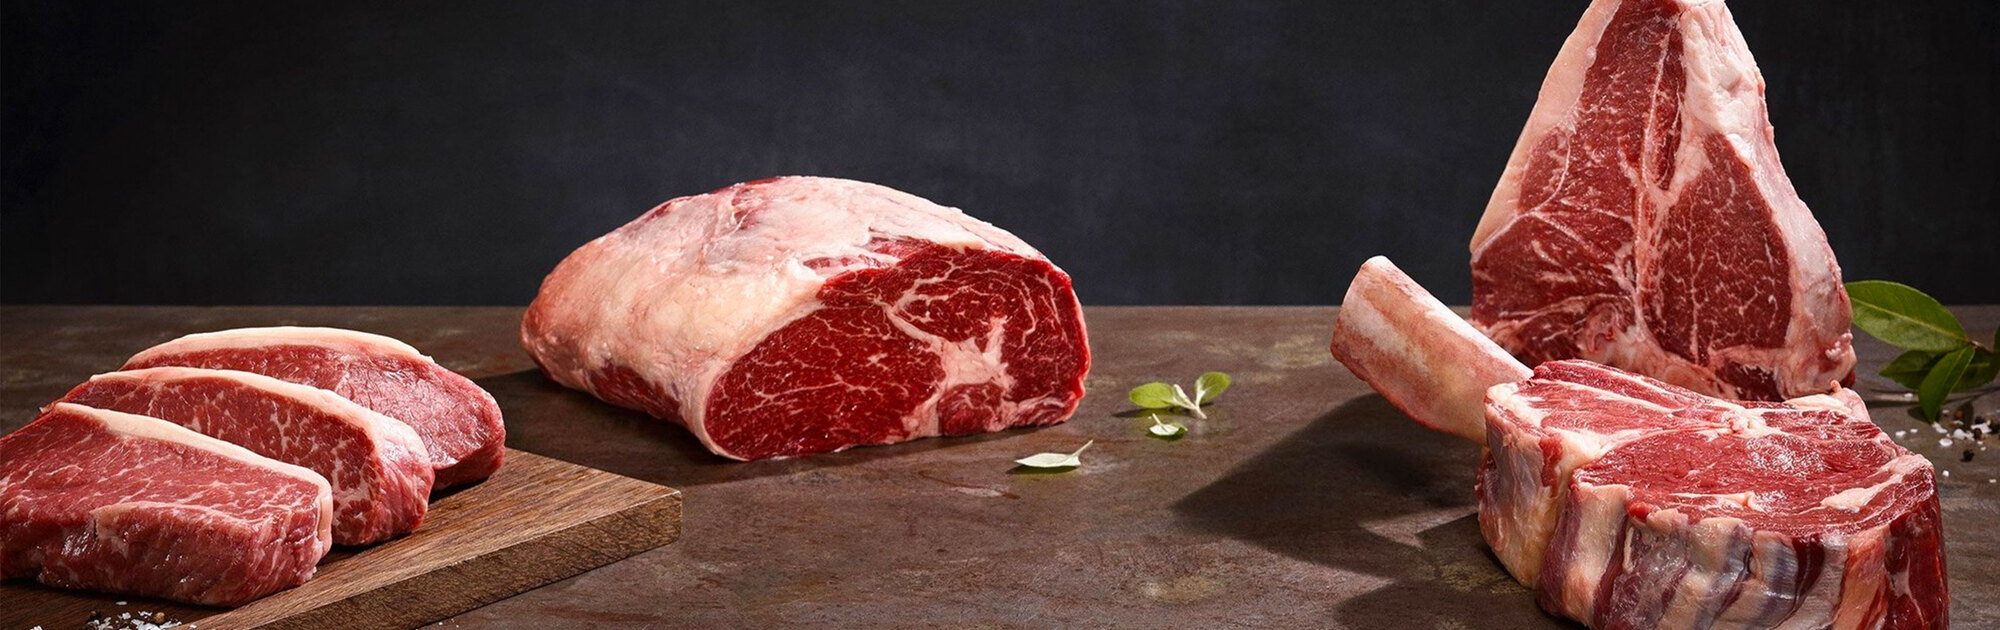 Rohe Steaks vom Rind vor schwarzem Hintergrund, auf einer braunen Steinoberfläche